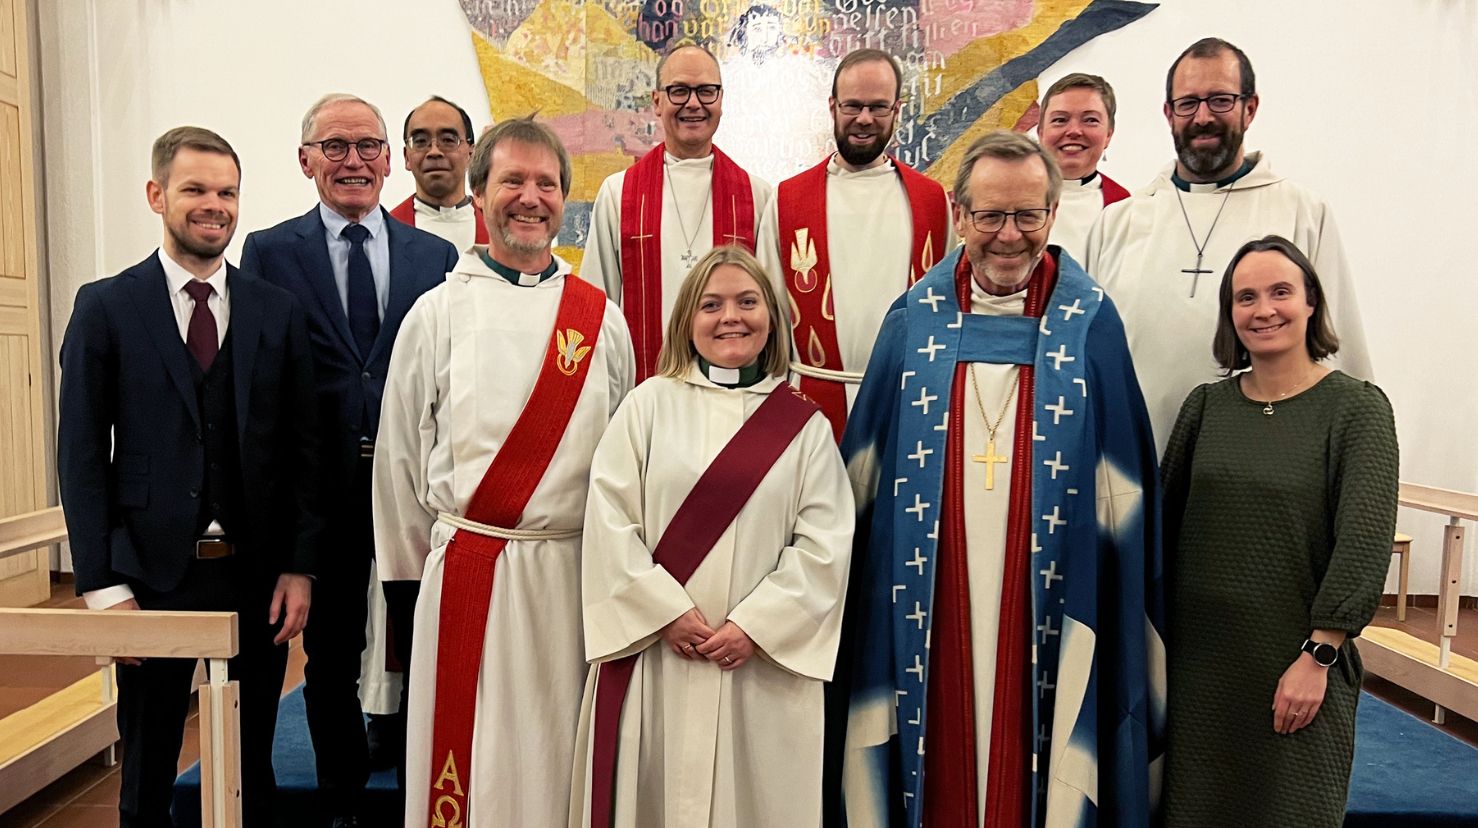 Eva Stokke-Zahl sammen med venner, kolegaer og biskopen etter vigslingsgudstjenesten i Olsvik kirke. Foto: Øyvind Sundfør Stokke-Zahl 